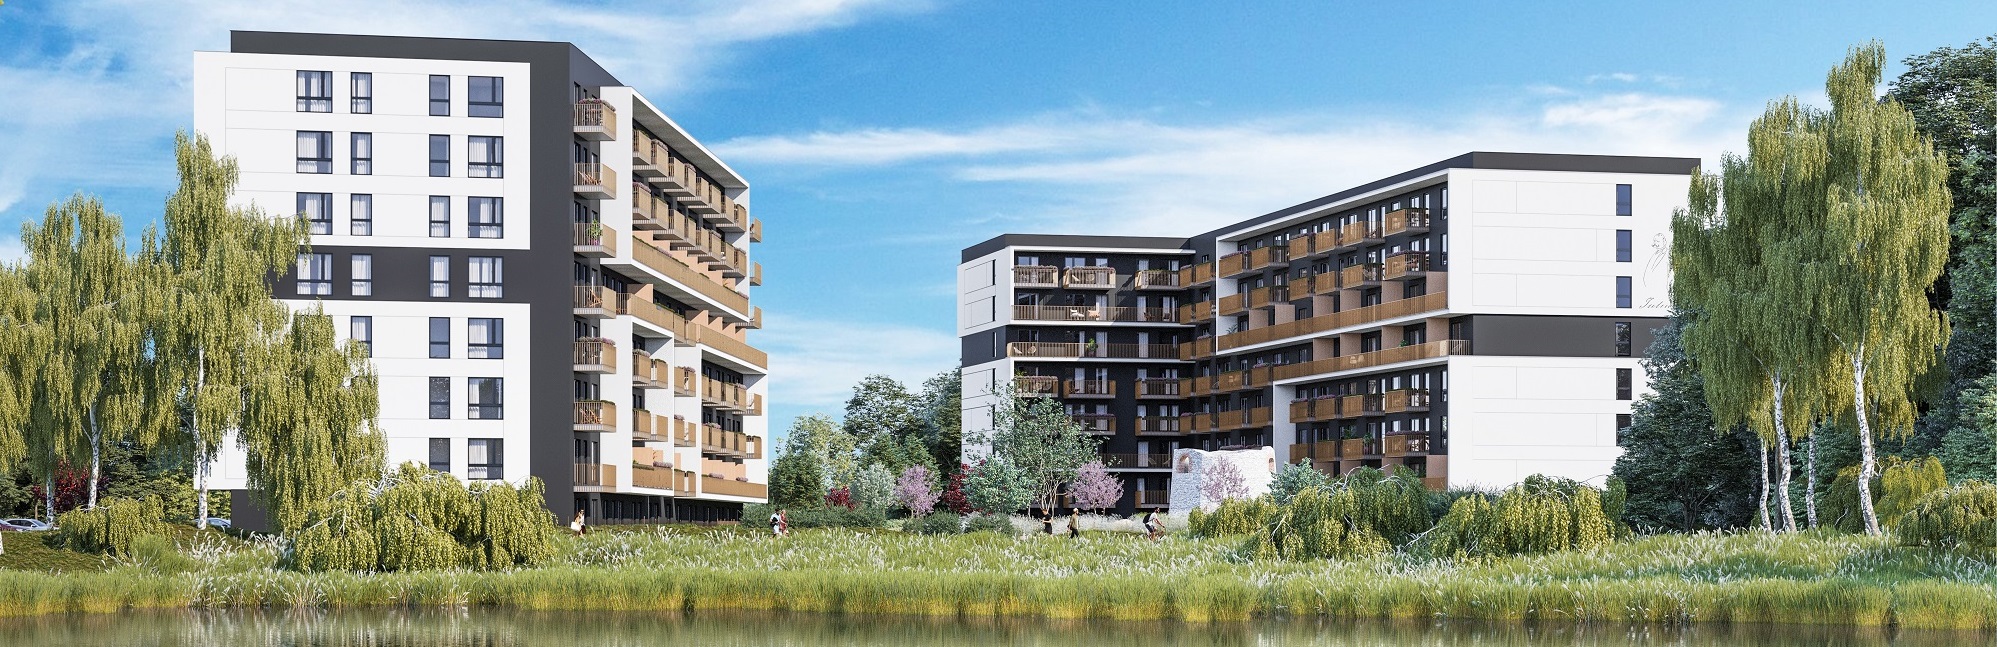 Na co zwracają uwagę mieszkańcy Krakowa kupując mieszkanie w 2022 roku?